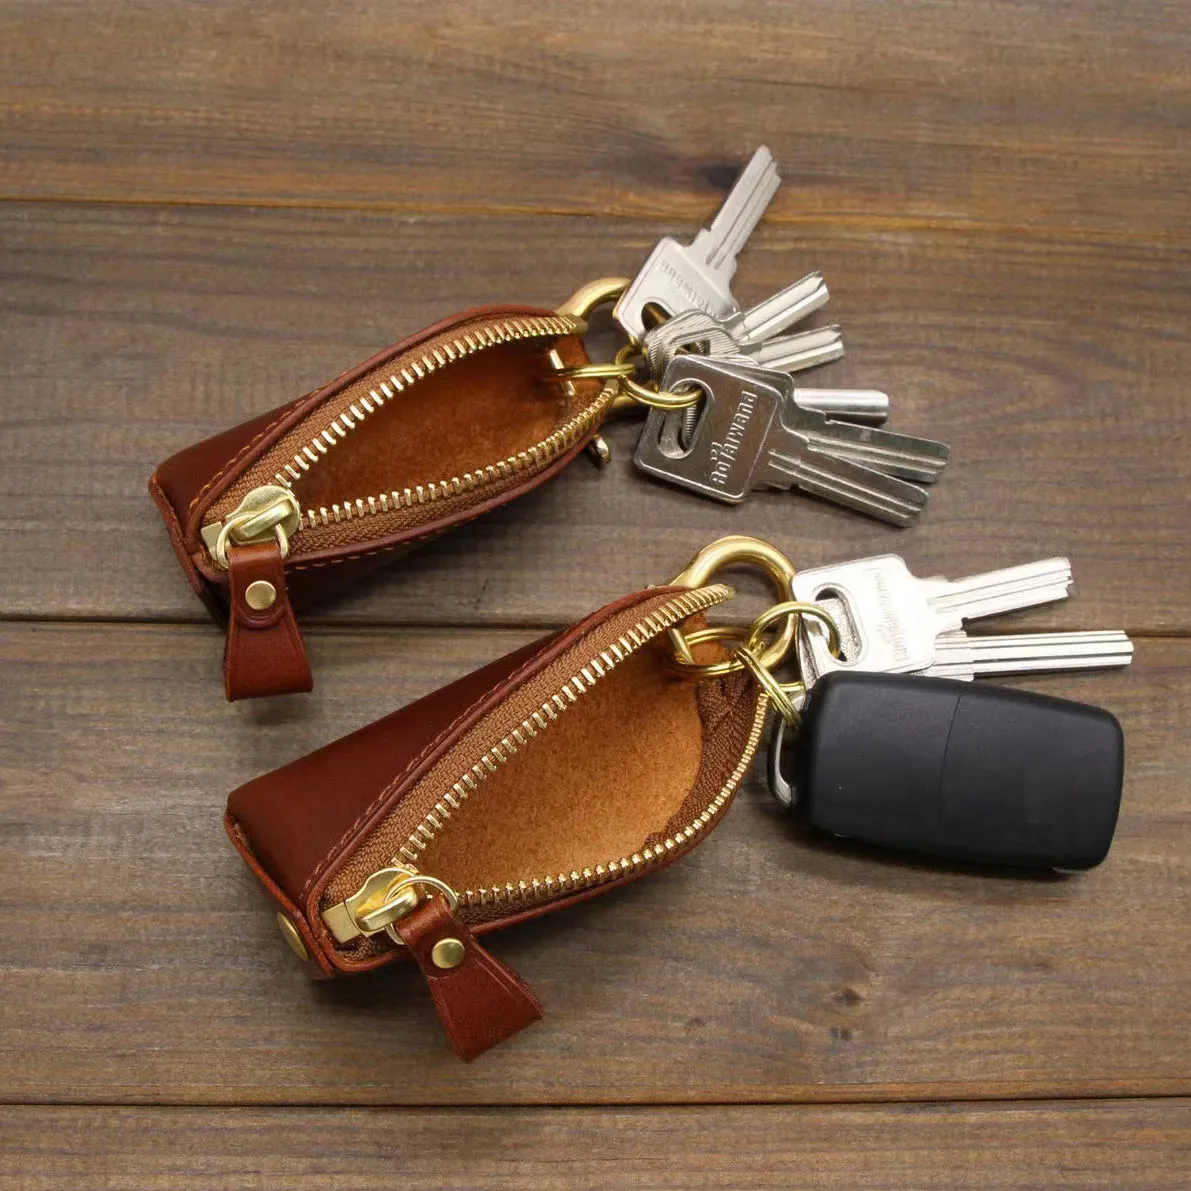 กระเป๋าหนังใส่กุญแจพร้อมพวงกุญแจ,กระเป๋าแฟชั่นมีฝาปิดแบบซิปสำหรับกุญแจรถหนังป้องกันกุญแจรถ